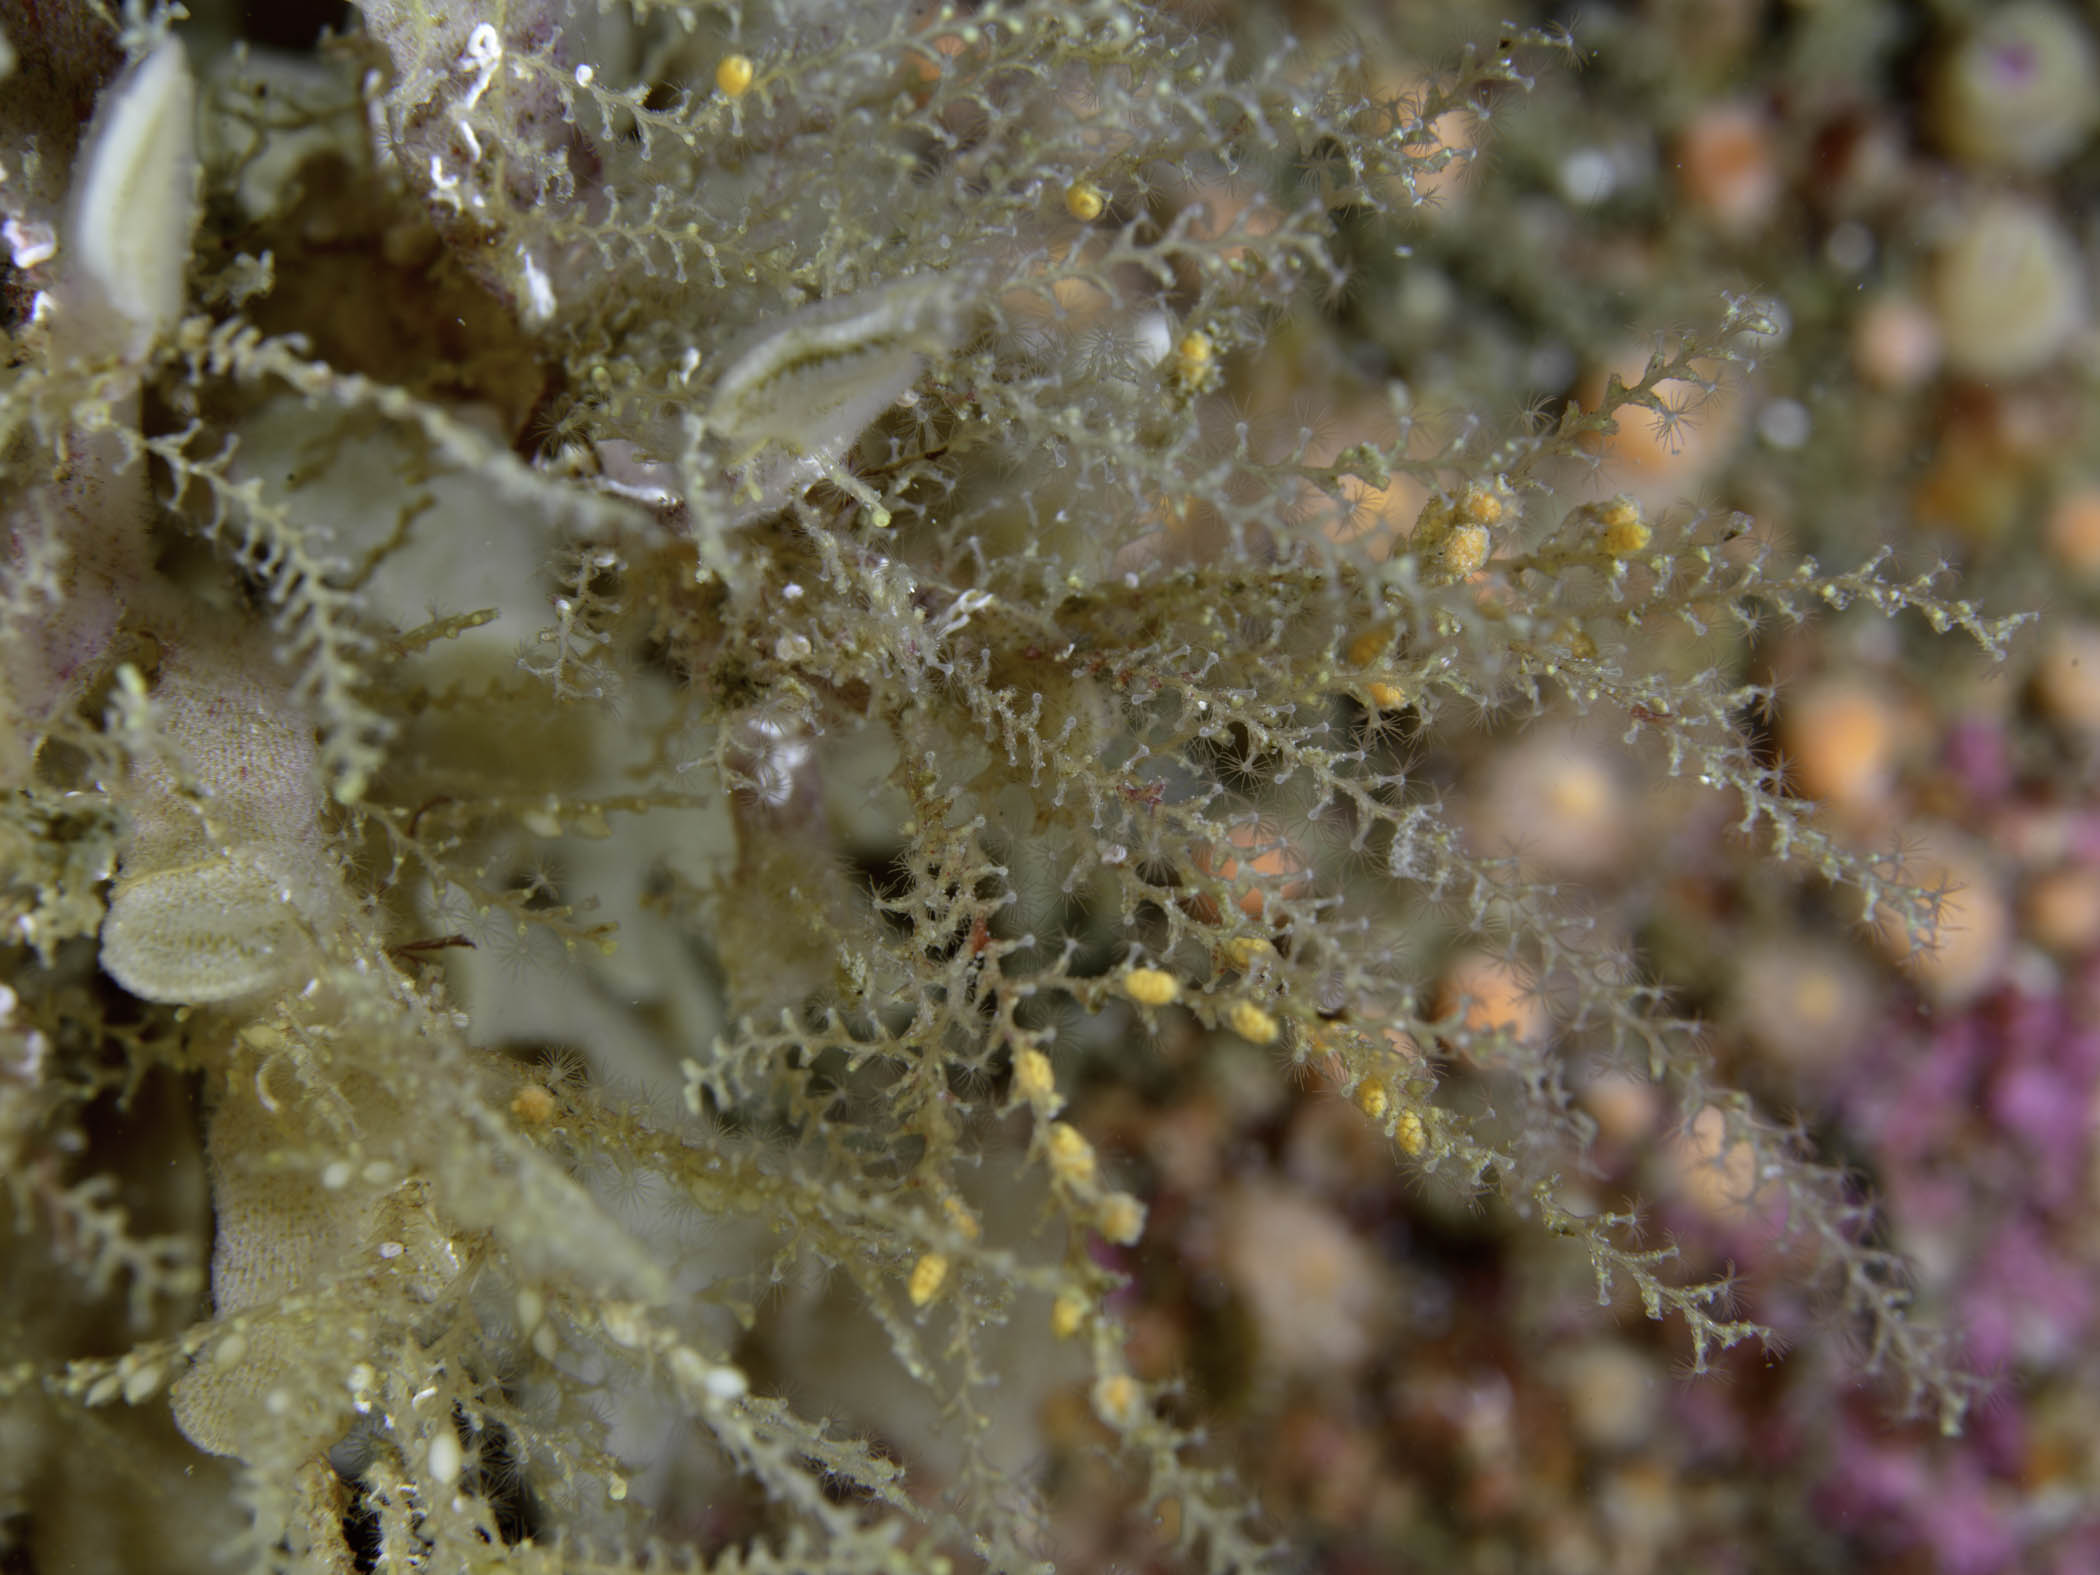 image: Sertularella fusiformis. On the bryozoan, <em>Flustra foliacea</em>, Kilkieran Bay, Co. Galway, 2017.